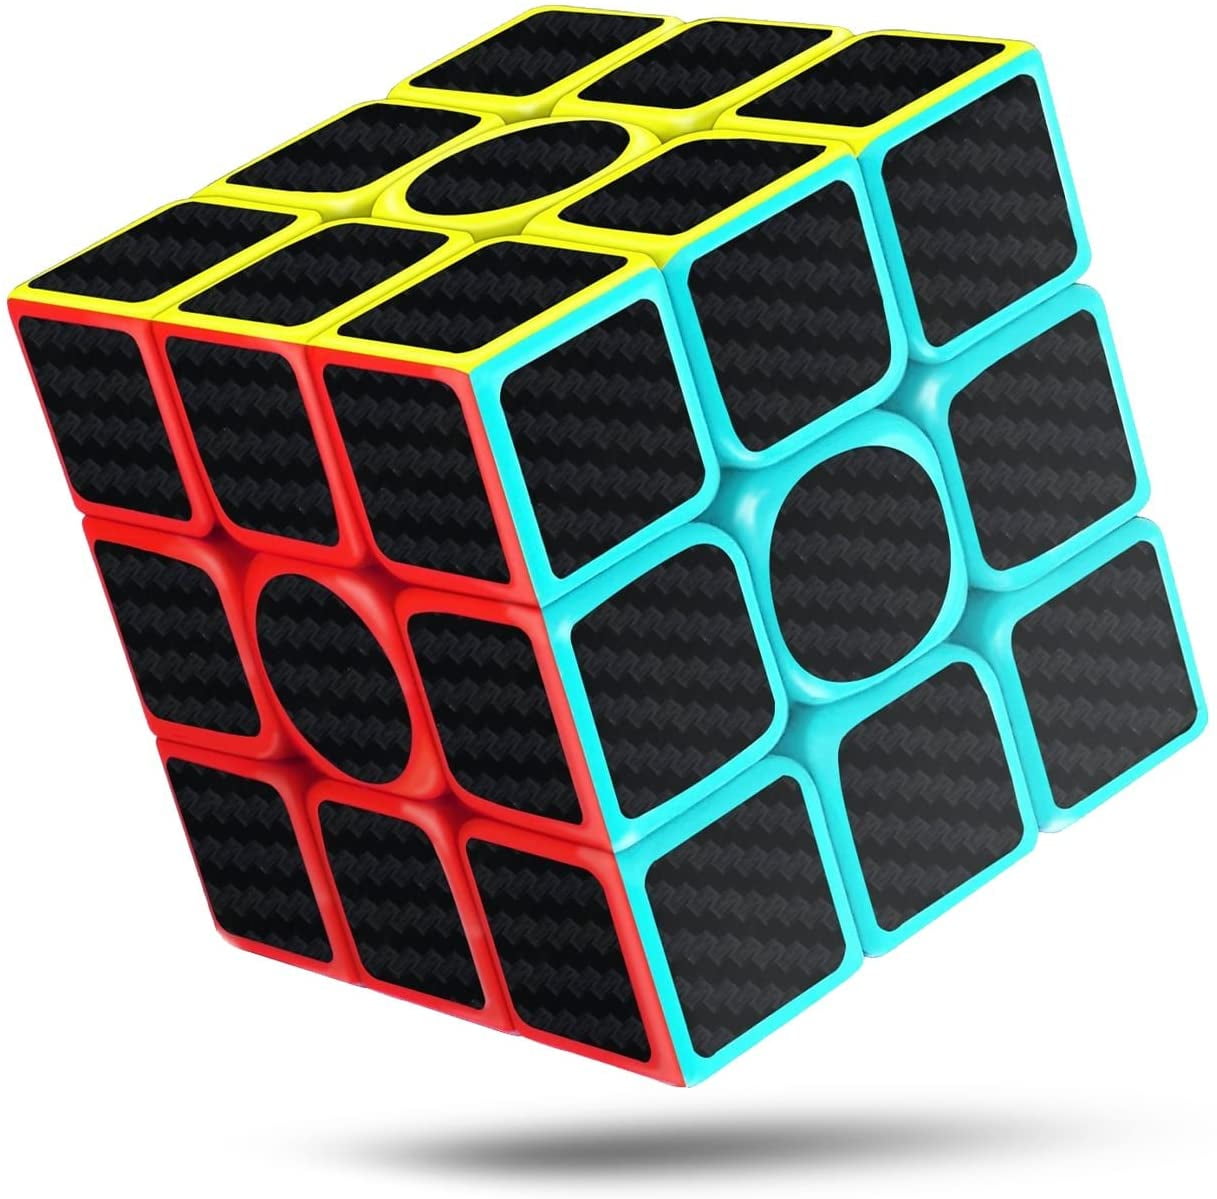 Magic Cube 3x3x3 